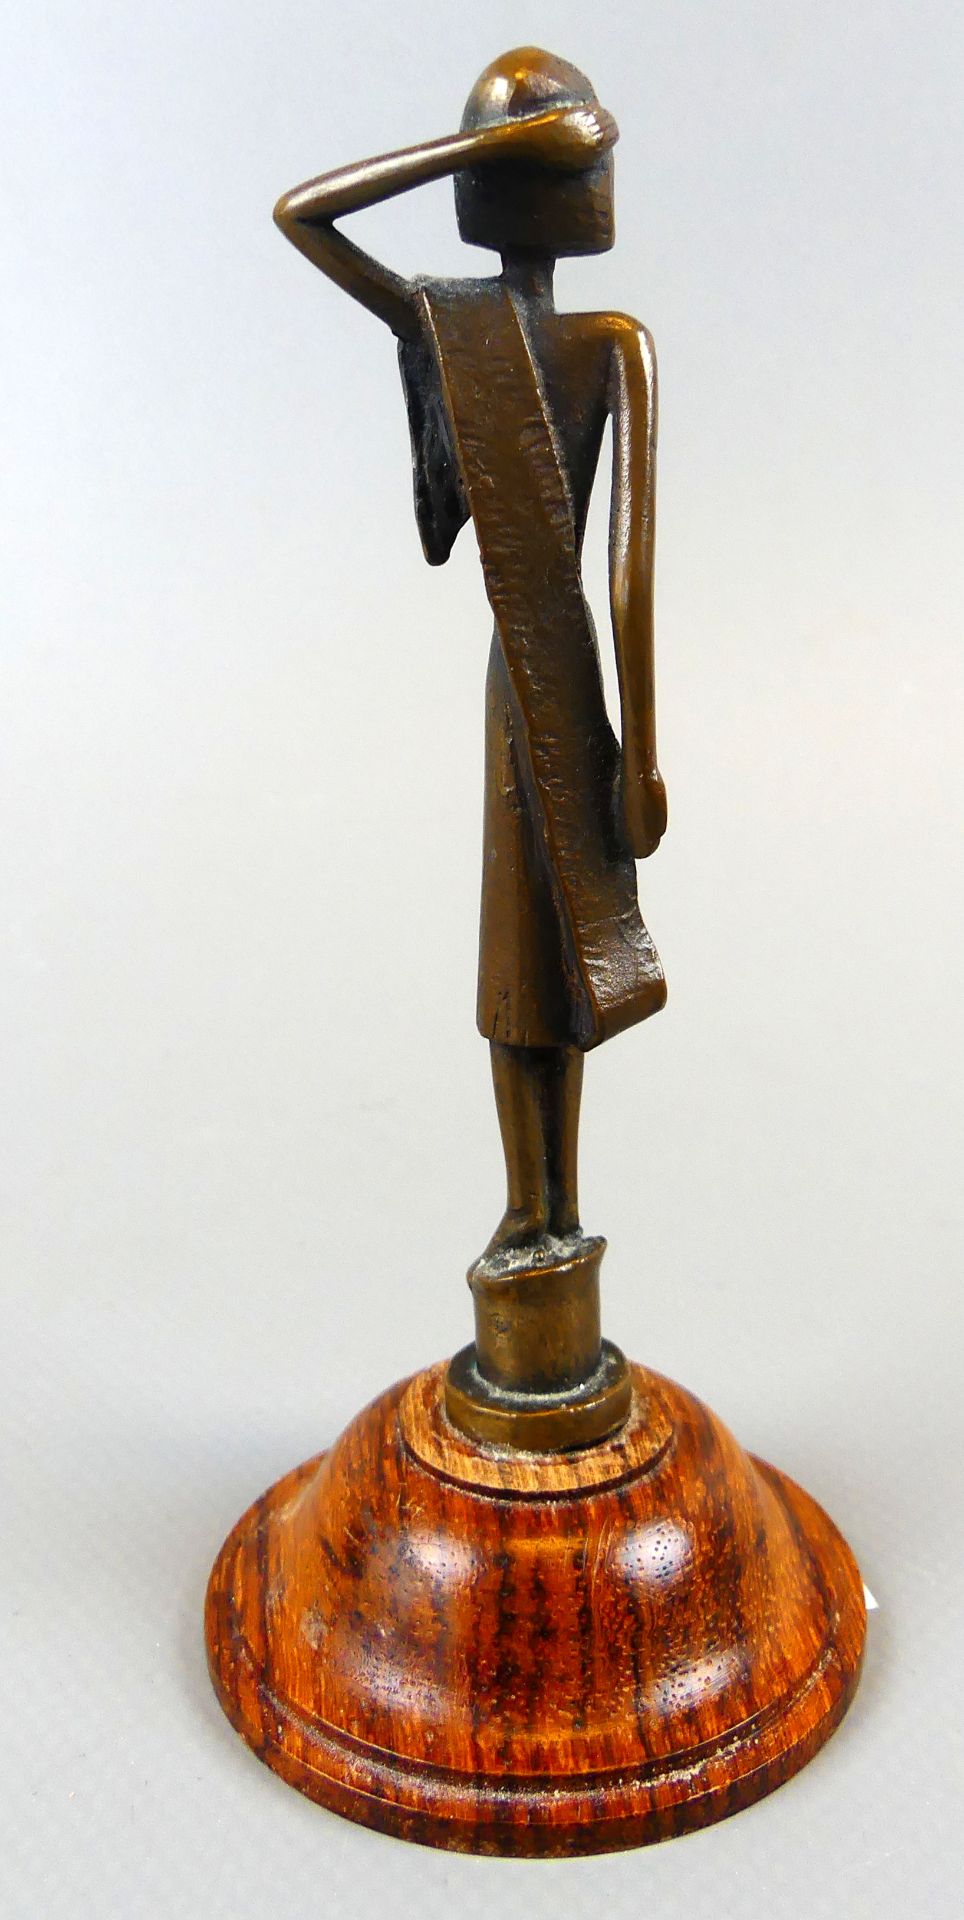 HERBERT ZEITNER (1900-1988), "Mädchen", Bronzefigur auf kleinem Holzsockel, - Bild 3 aus 3